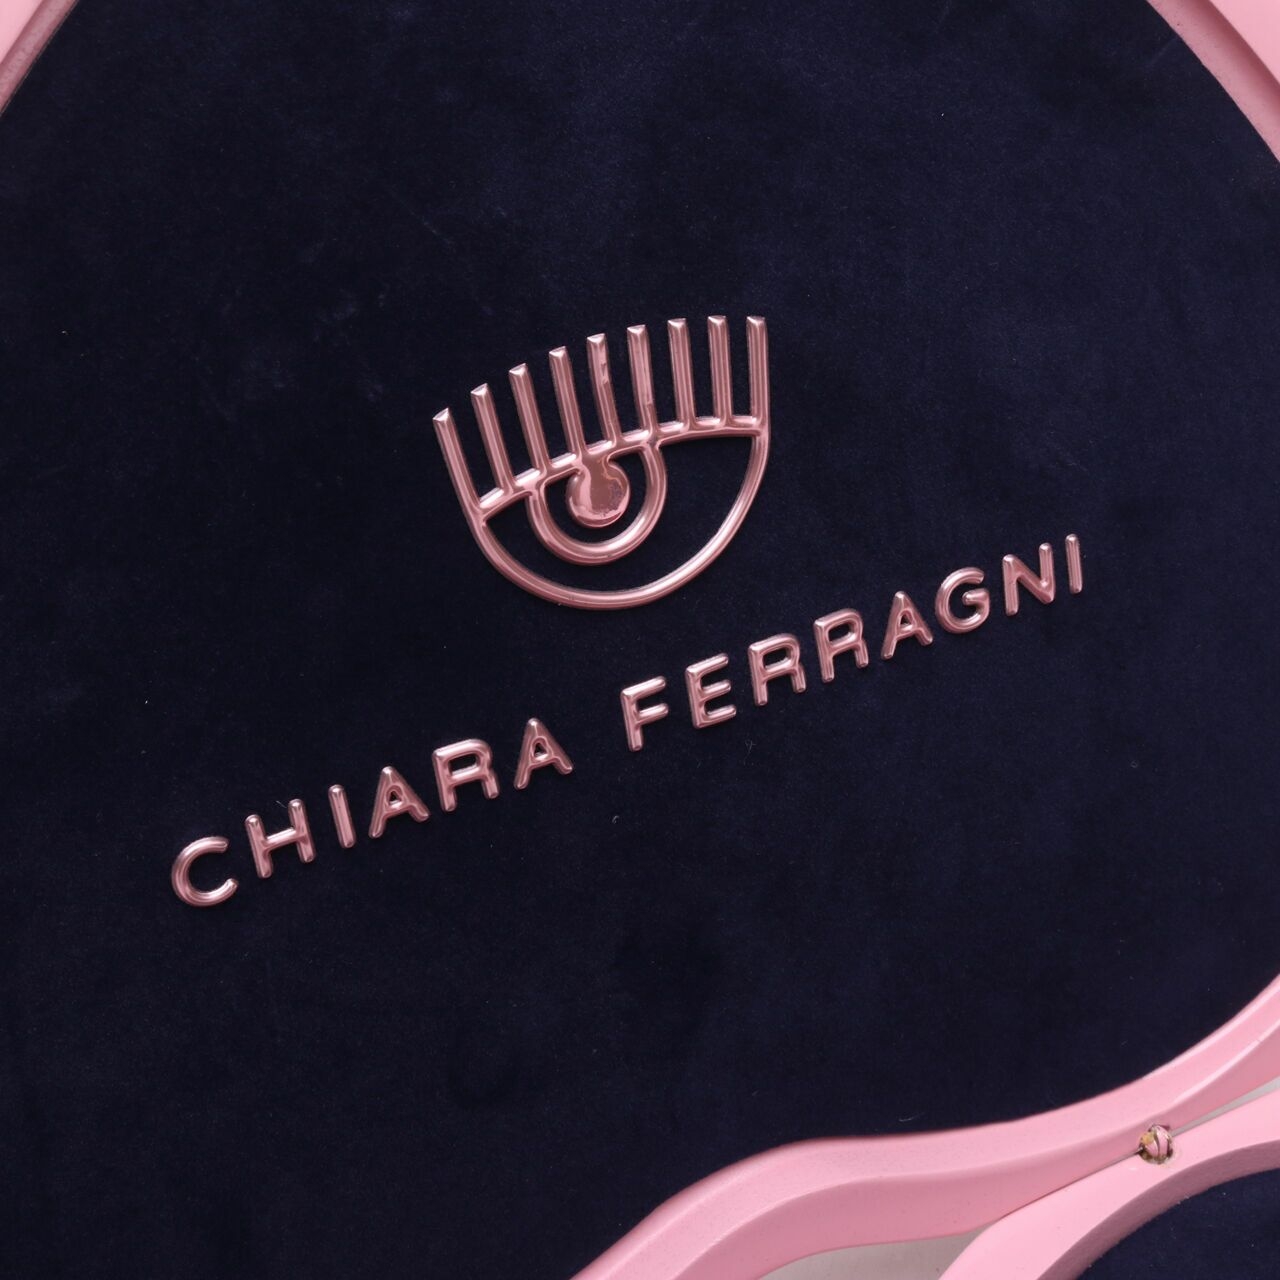 Chiara Ferragni Infinity Love Neckalce Earrings Bracelet Set